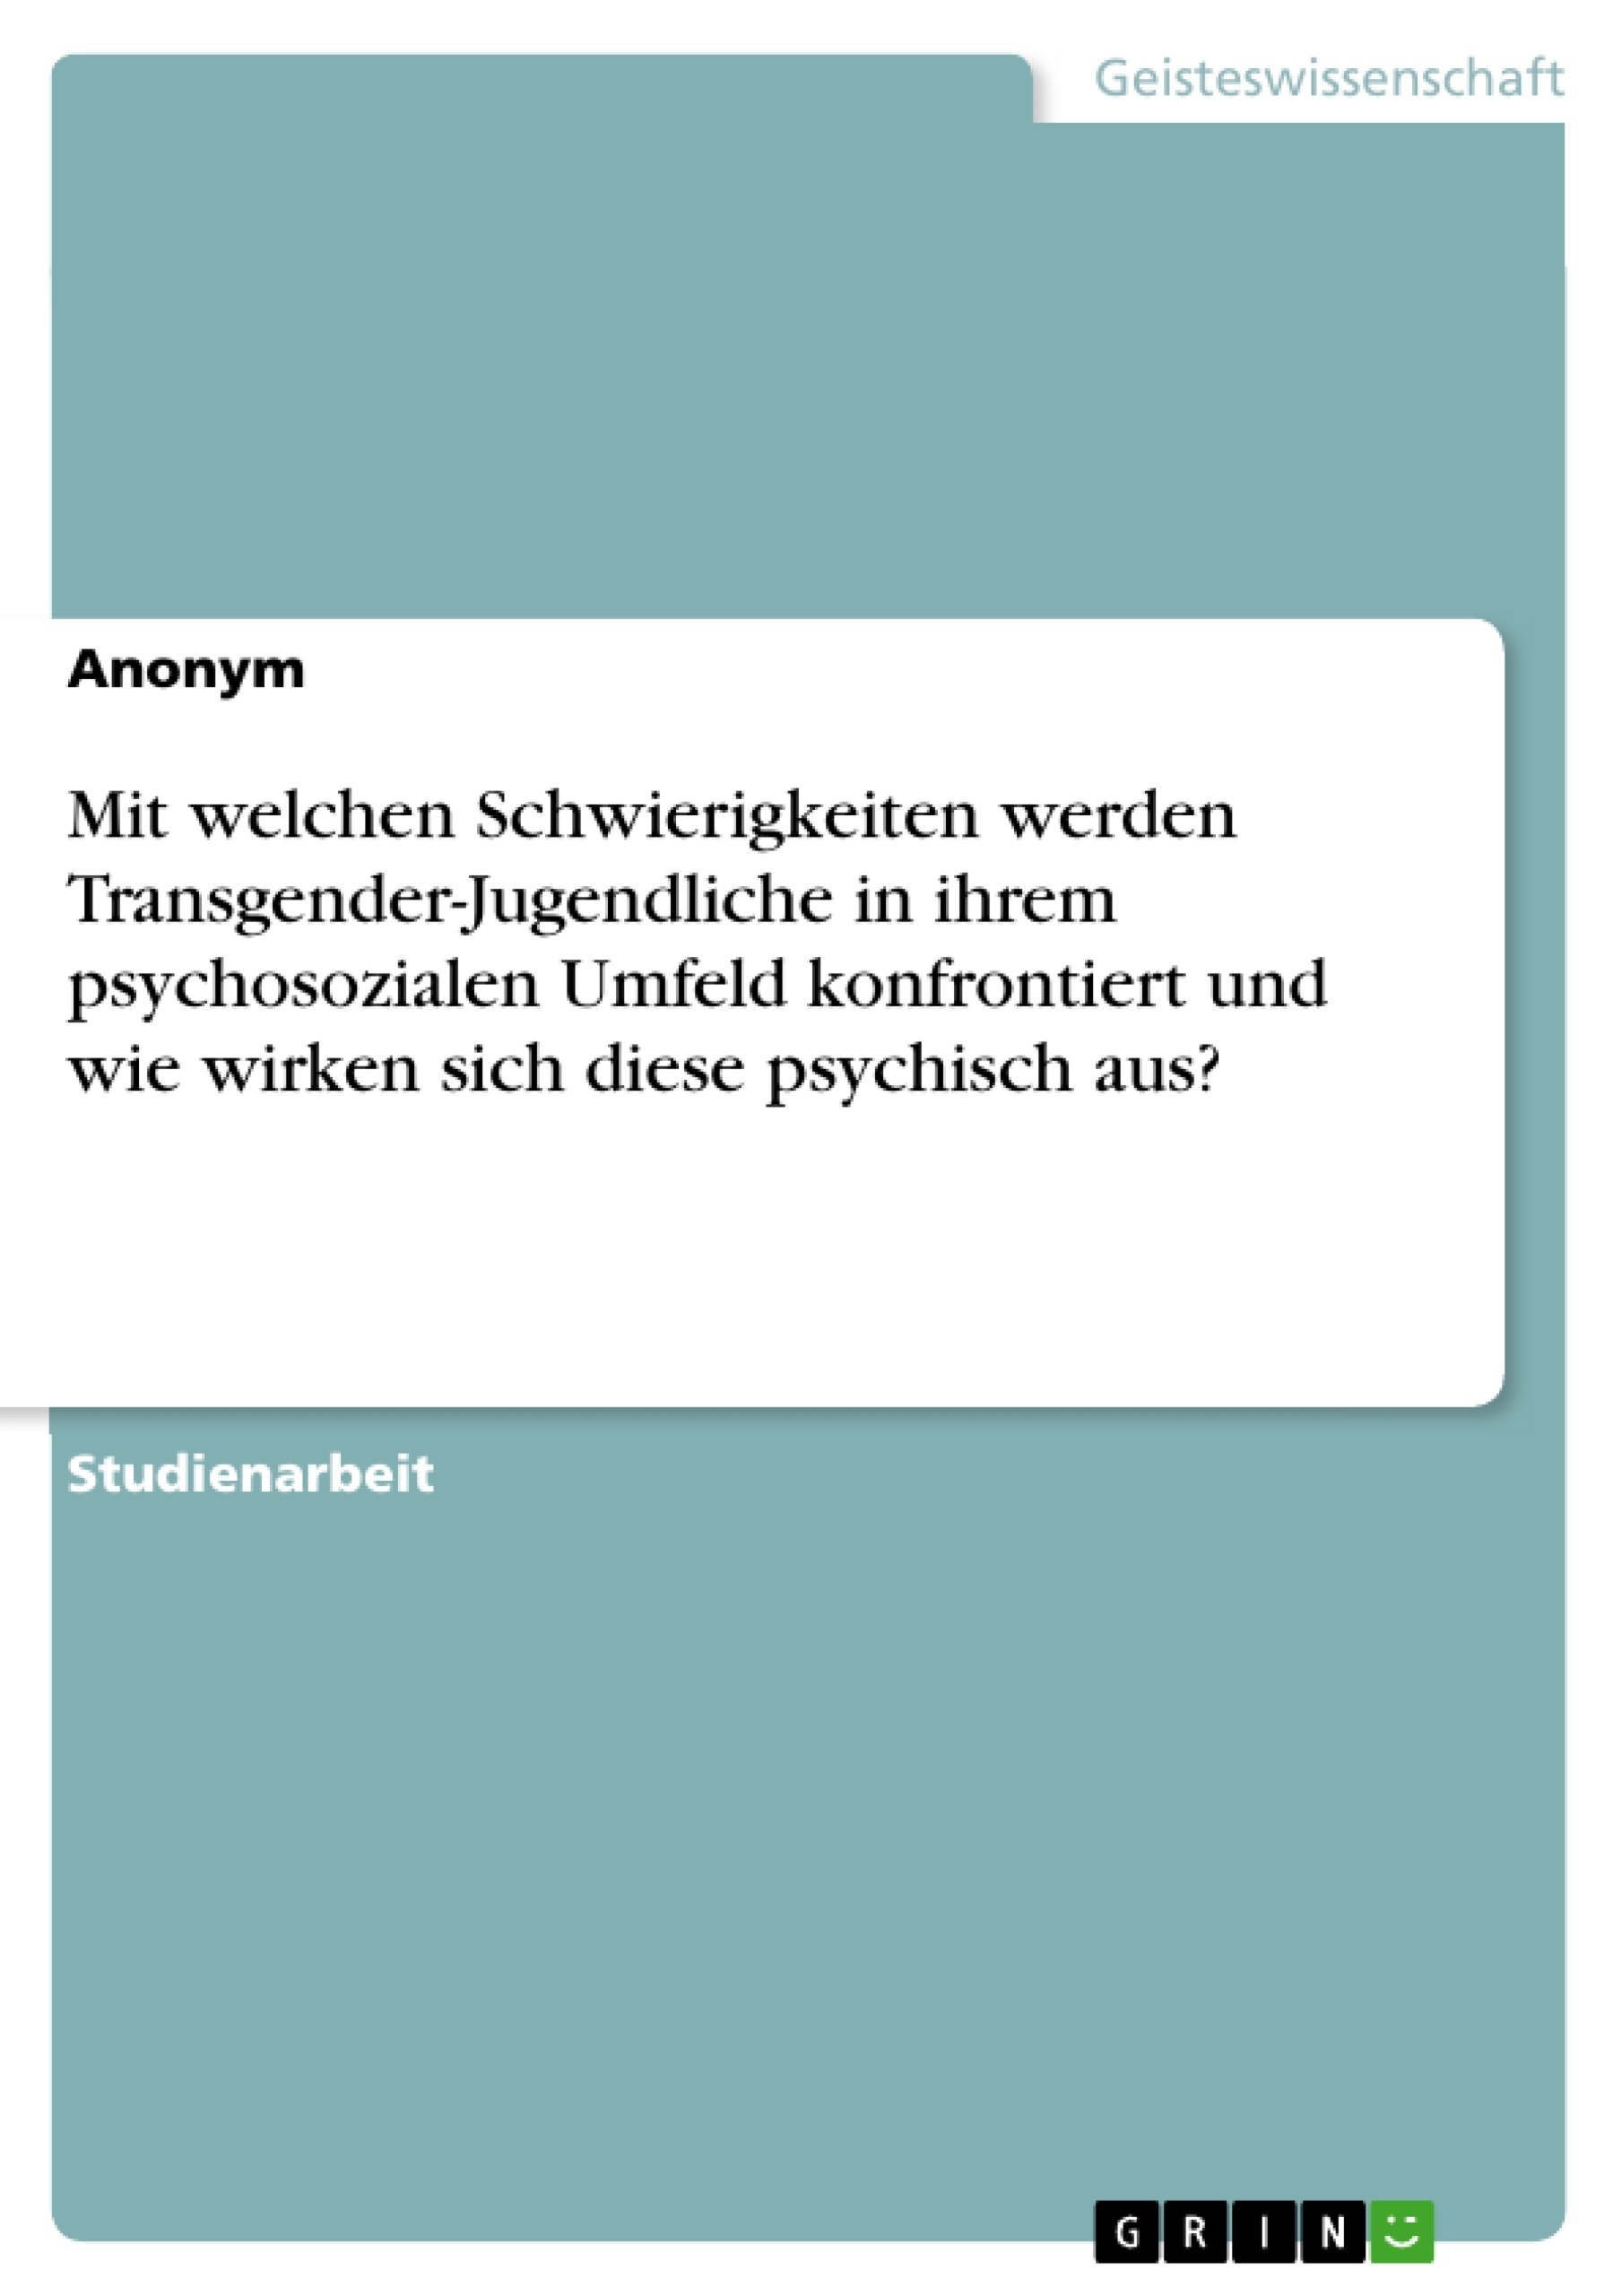 Titel: Mit welchen Schwierigkeiten werden Transgender-Jugendliche in ihrem psychosozialen Umfeld konfrontiert und wie wirken sich diese psychisch aus?